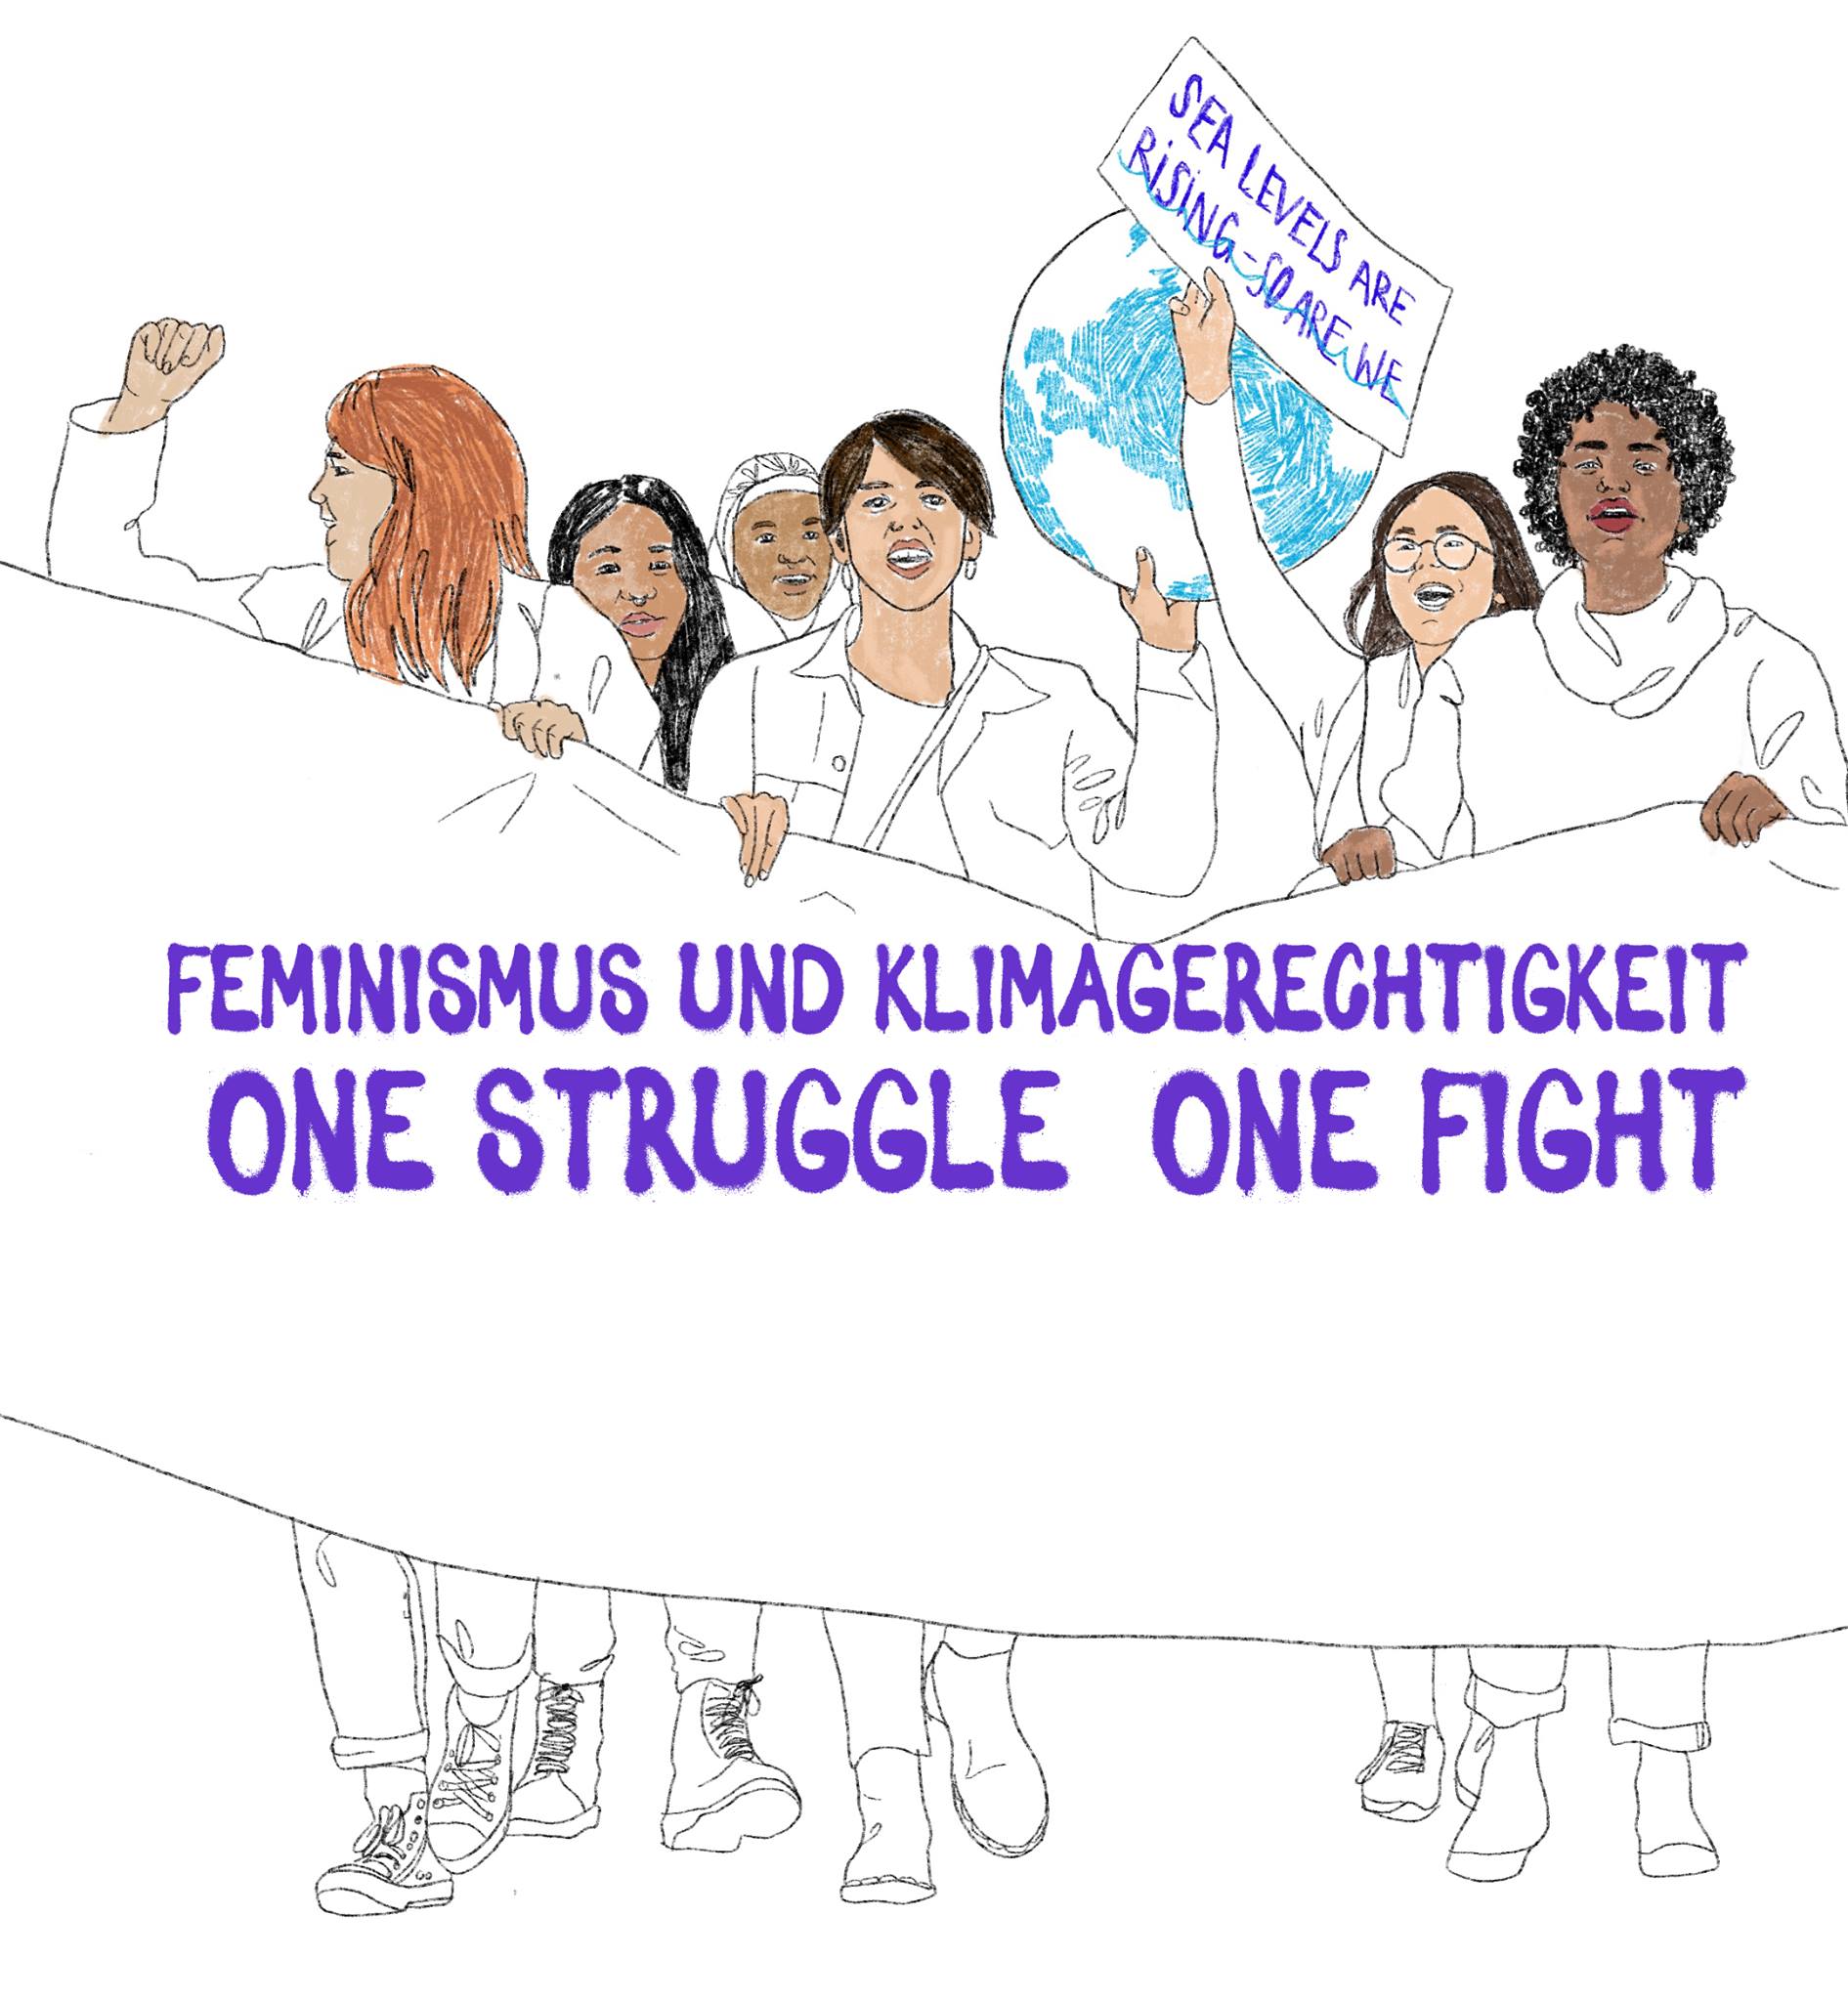 Feminismus und Klimagerechtigkeit – One struggle, one fight!